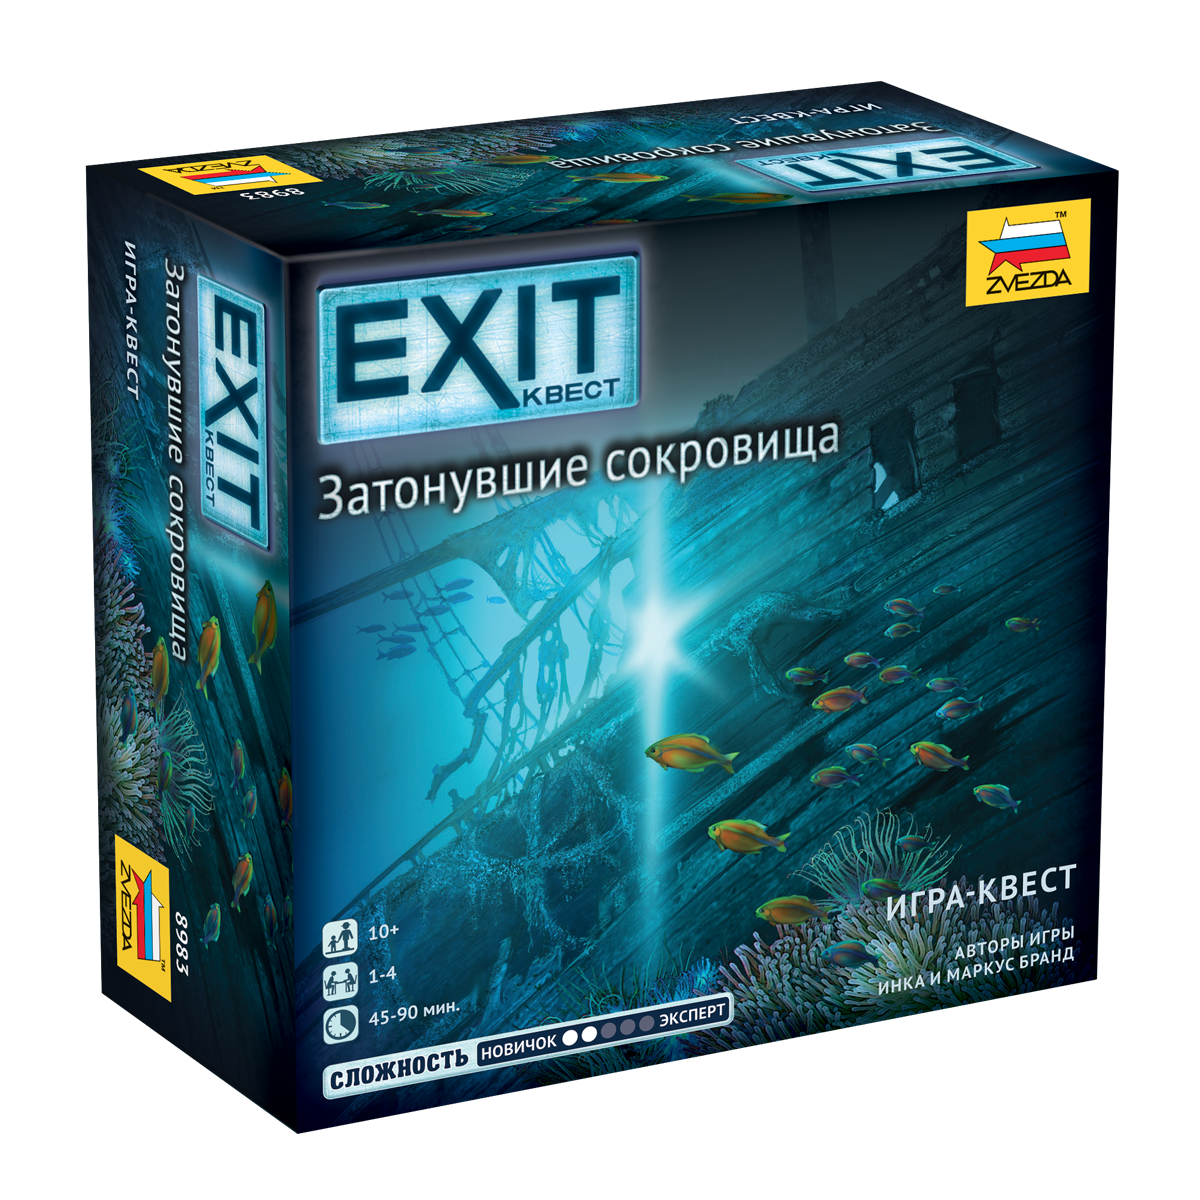 Настольная игра "Exit. Затонувшие сокровища" Zvezda 8983